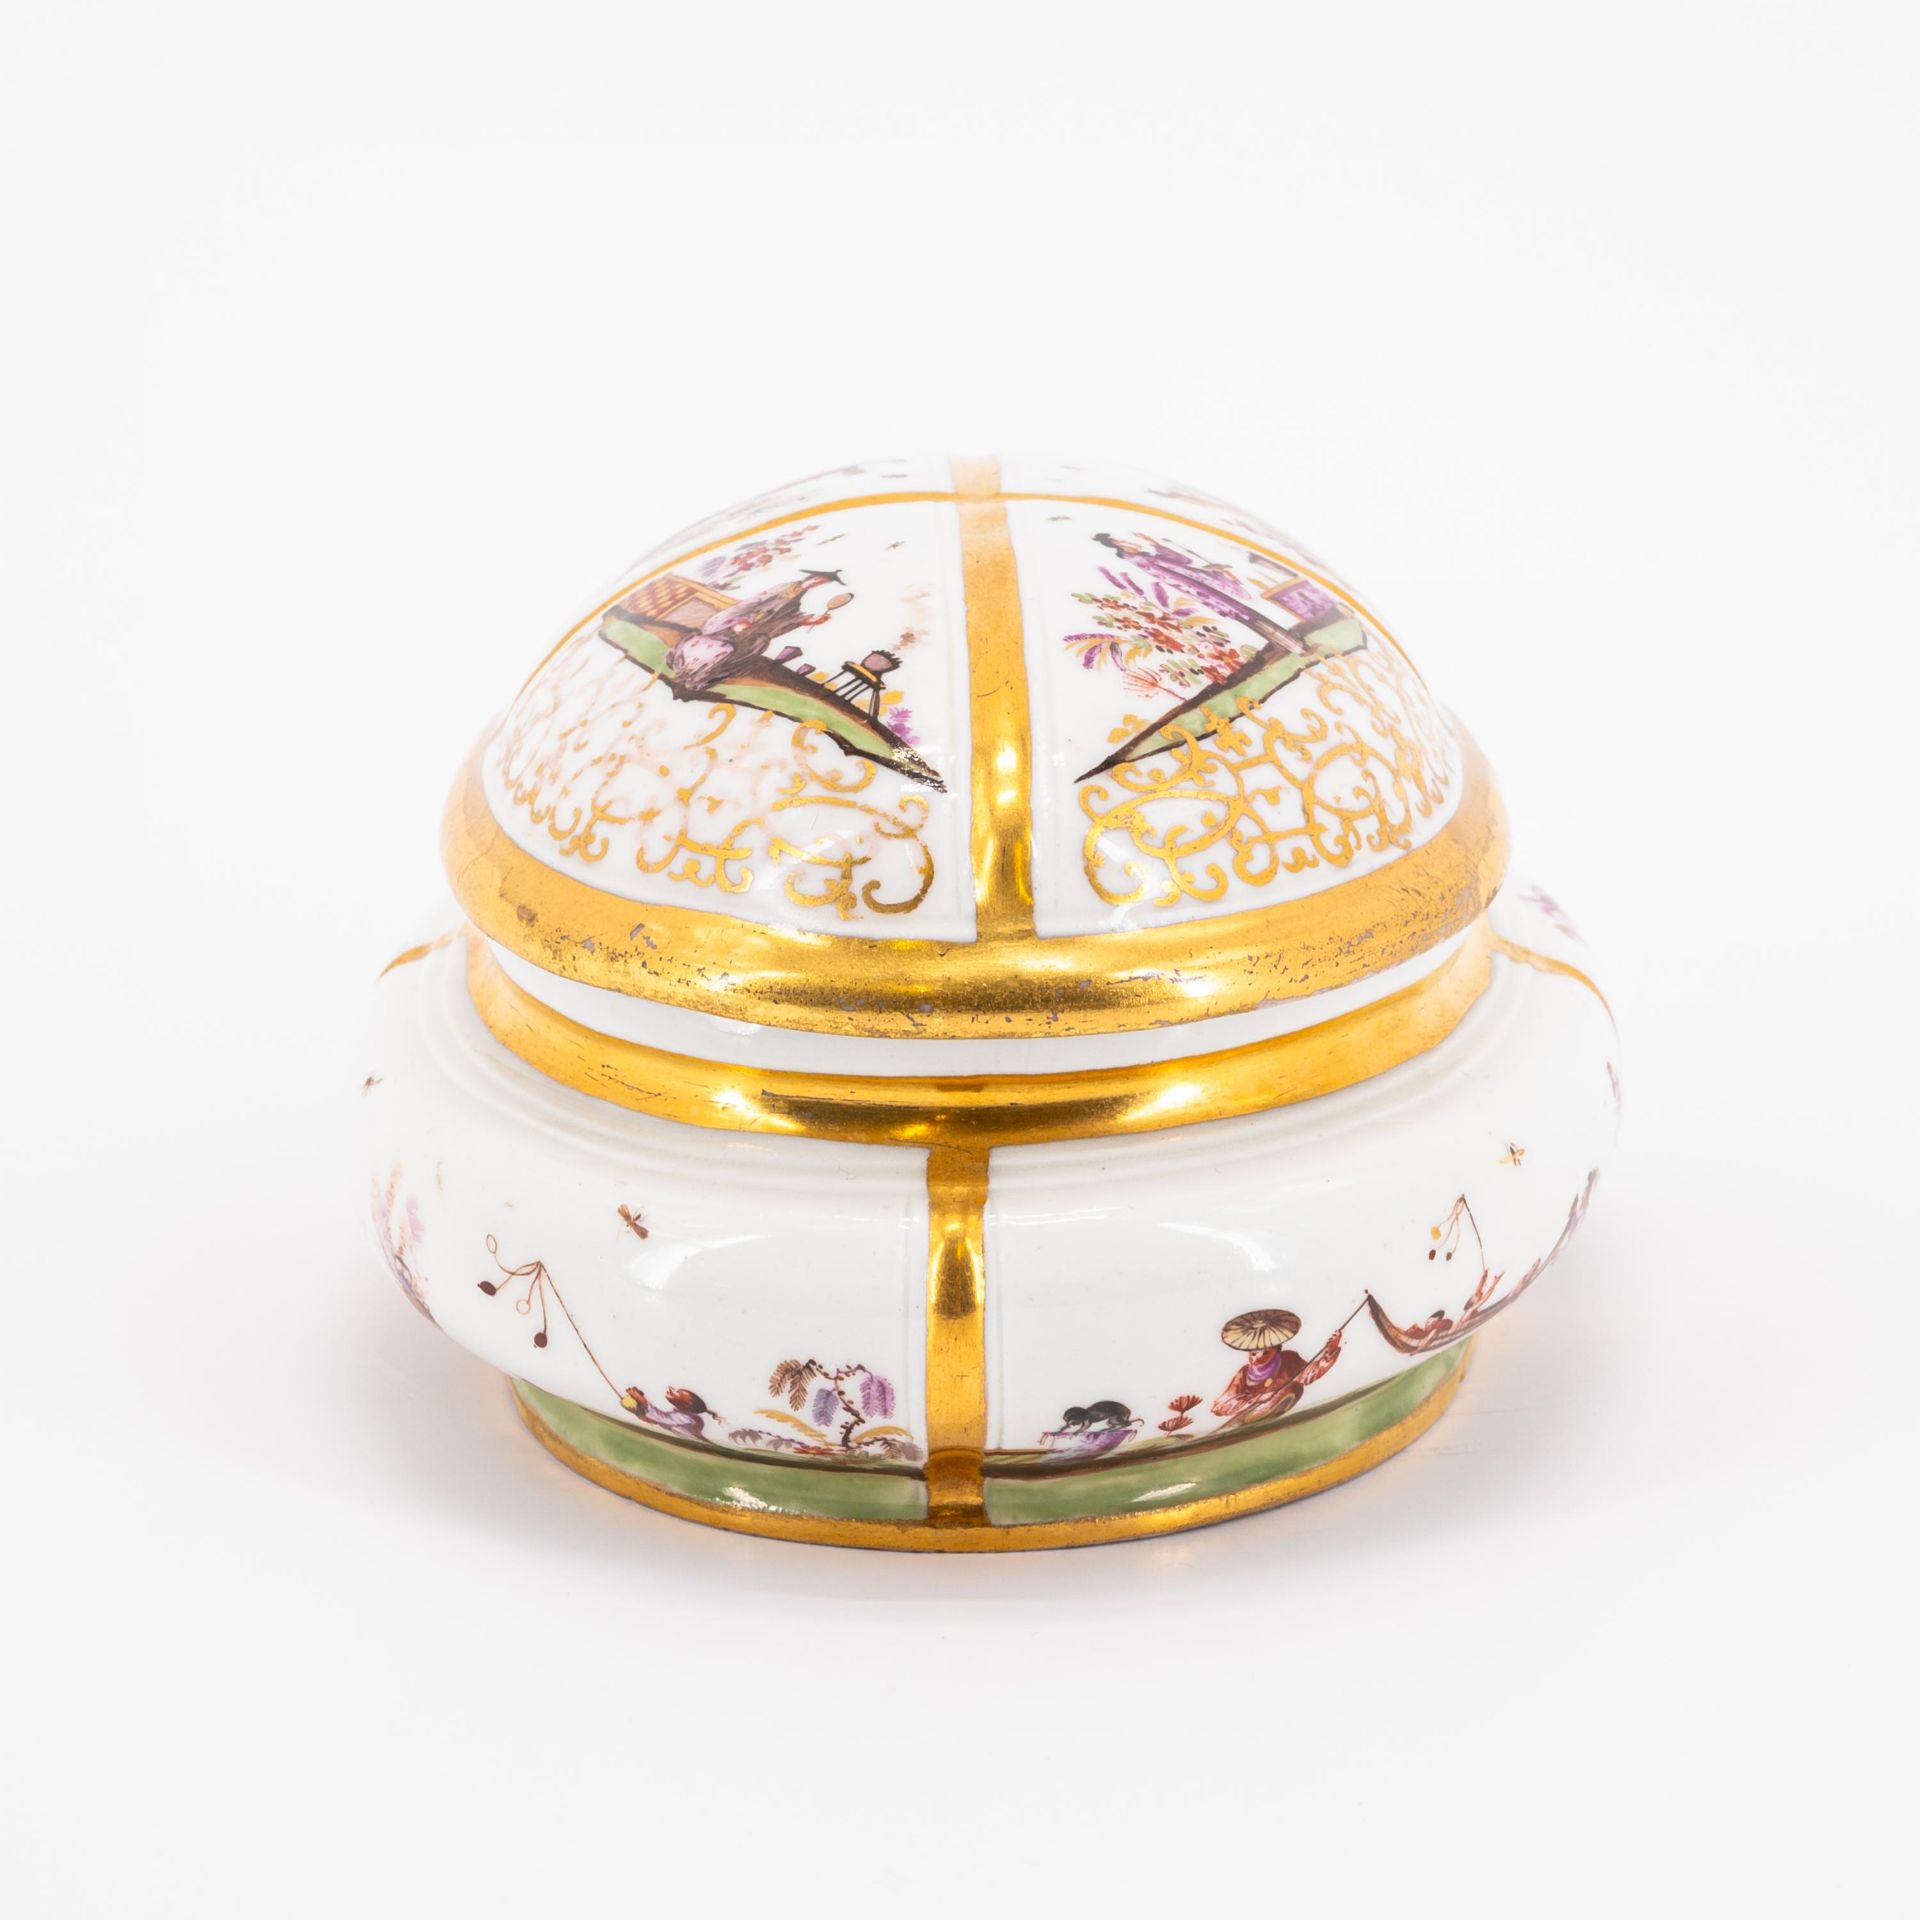 Ovale Zuckerdose mit Chinoiserien - Bild 3 aus 7